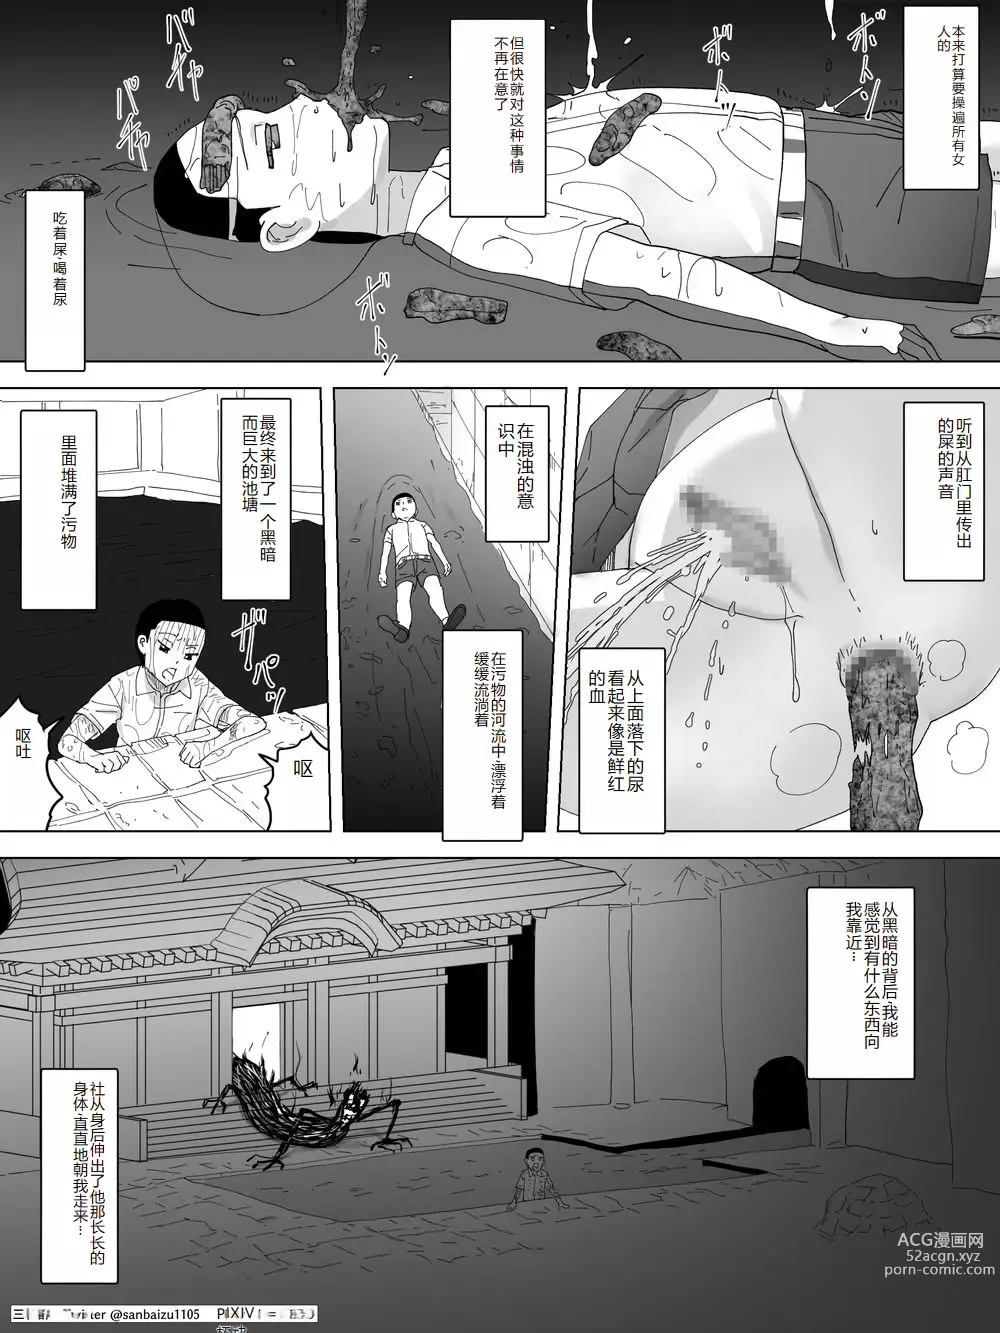 Page 21 of doujinshi Miko Benjo o Shita kara